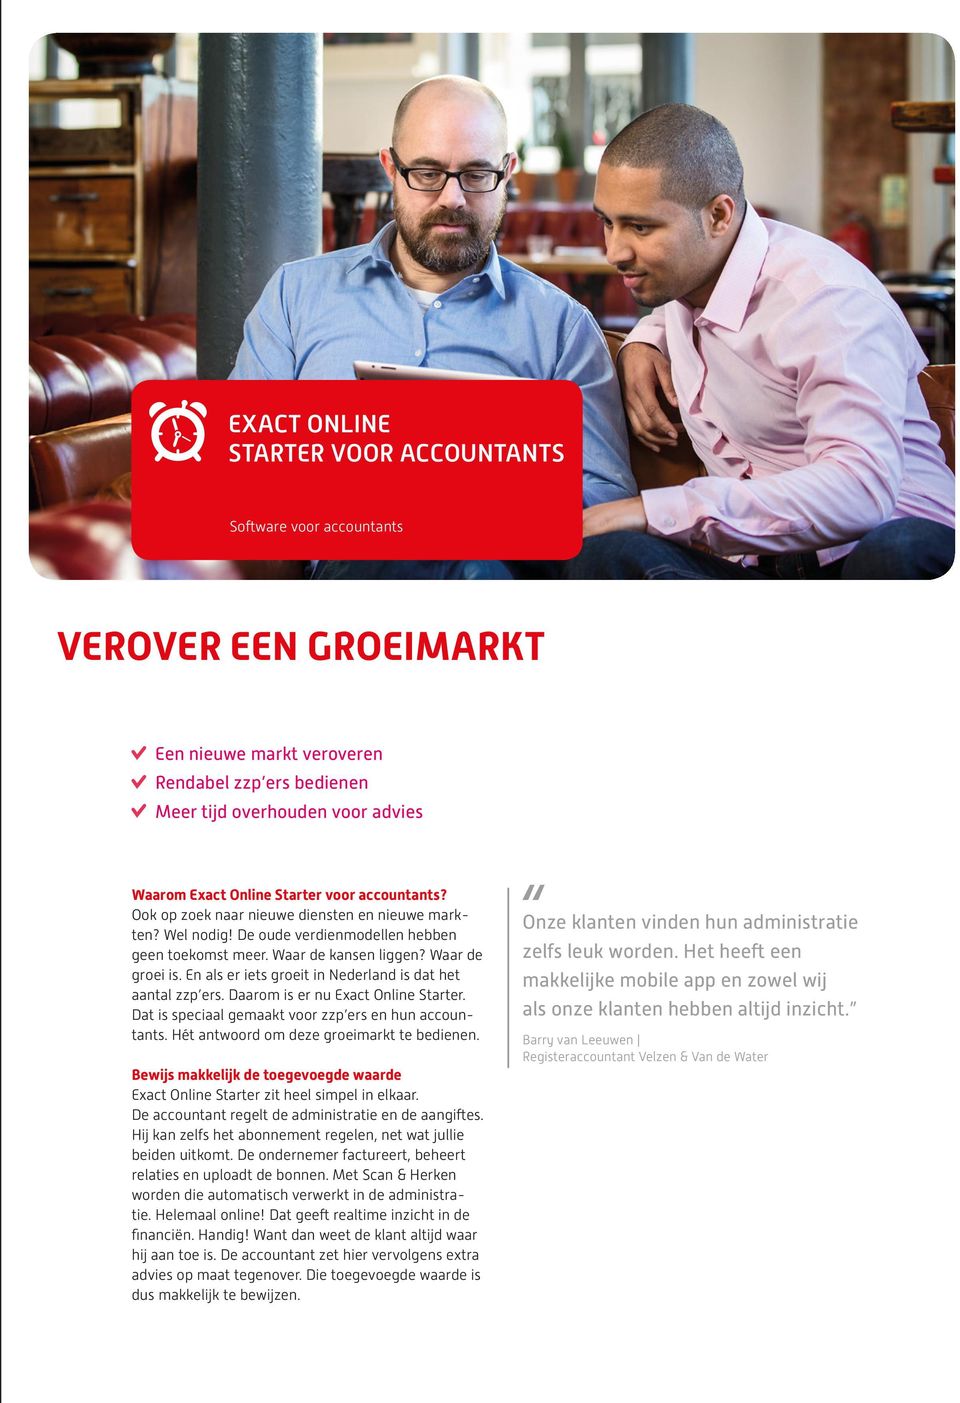 En als er iets groeit in Nederland is dat het aantal zzp ers. Daarom is er nu Exact Online Starter. Dat is speciaal gemaakt voor zzp ers en hun accountants.